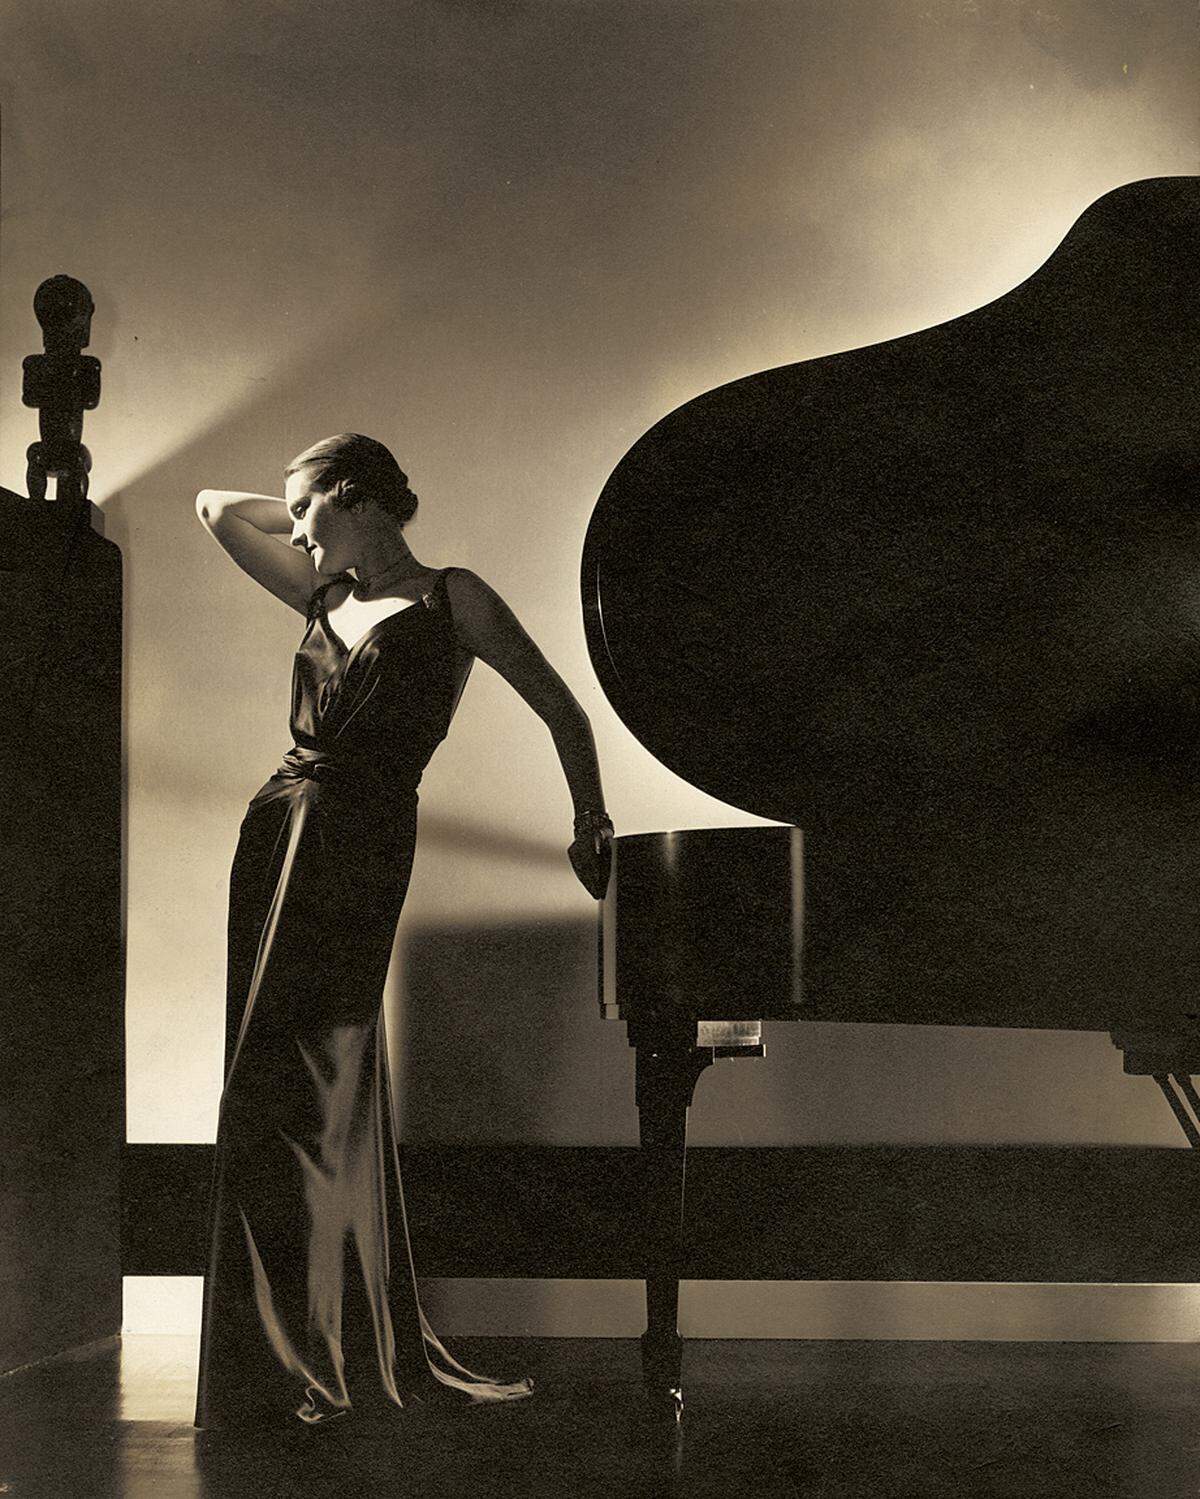 Weiter: Mehr Fotos aus "Edward Steichen. In High Fashion" Edward Steichen: Model Margaret Horan in einem schwarzen Kleid von Jay-Thorpe, 1935, Courtesy Condé Nast Archive